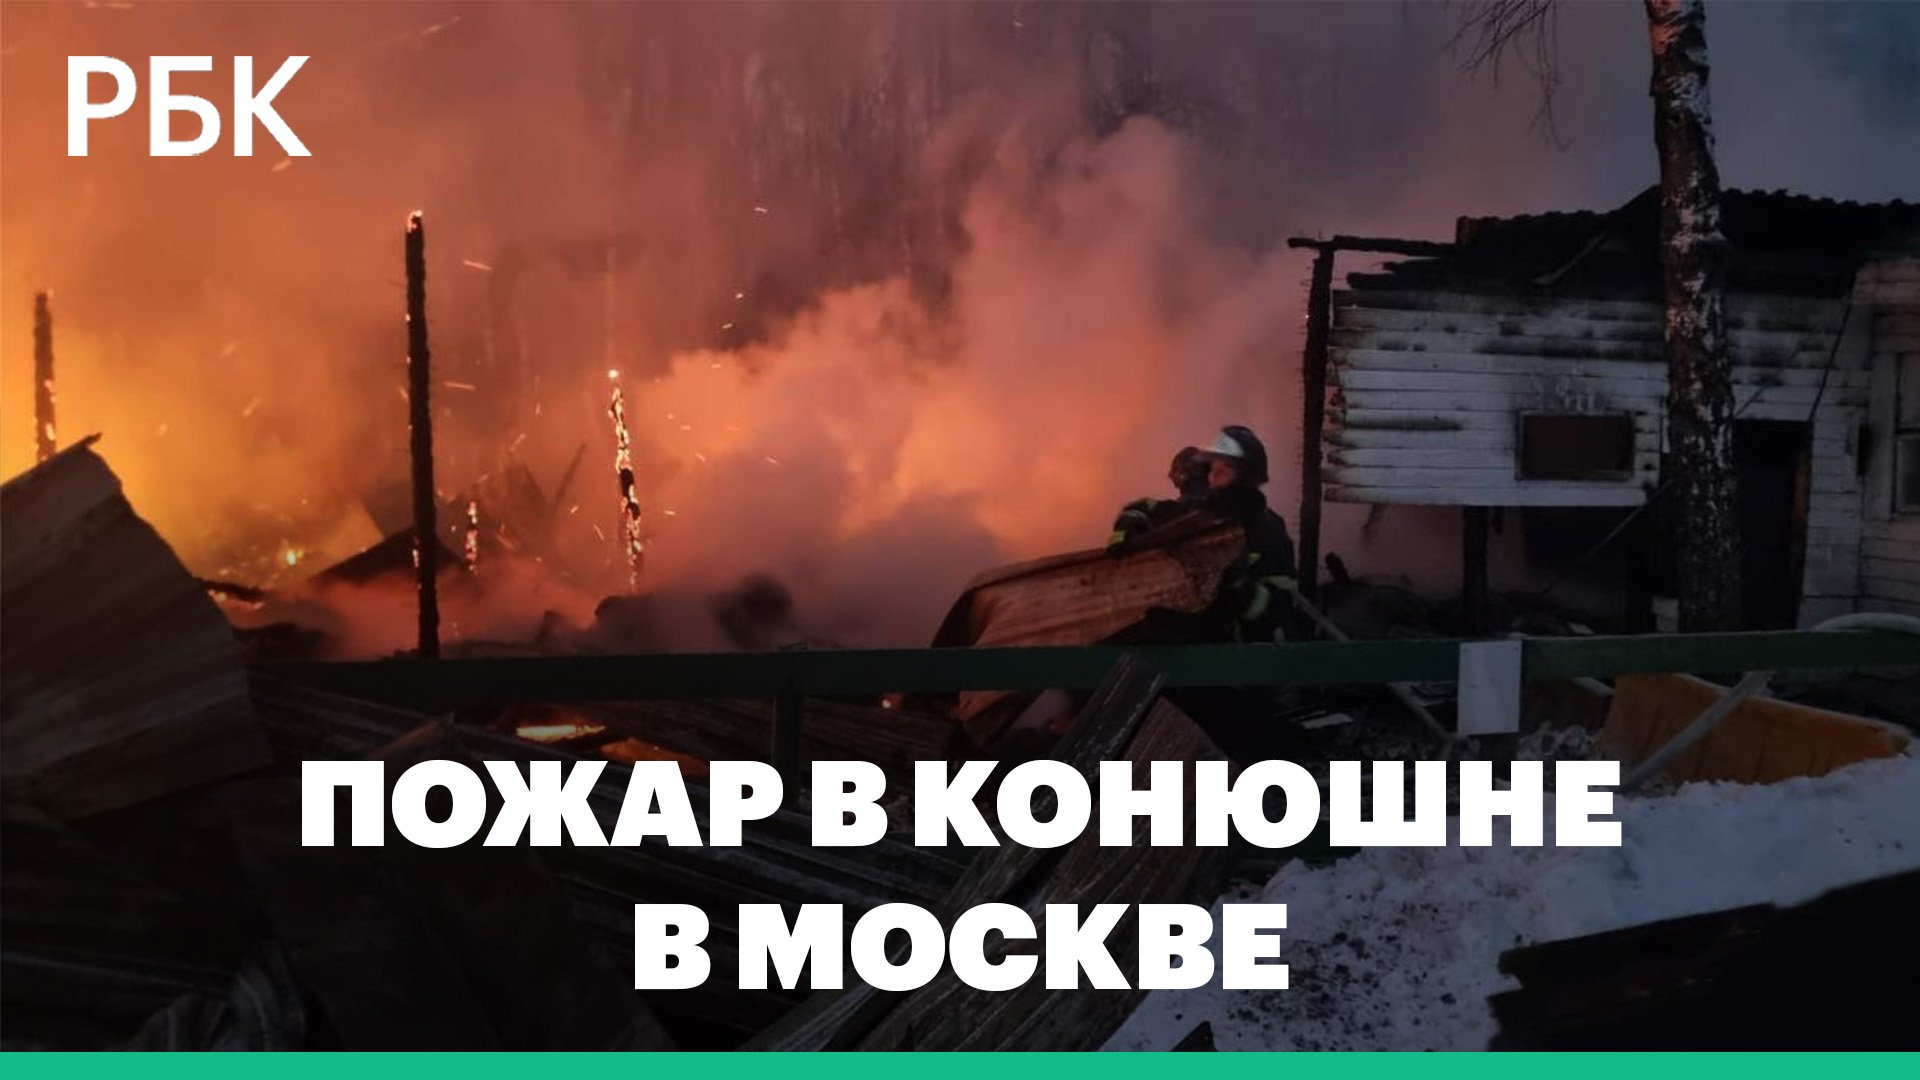 На востоке Москвы загорелась конюшня, погибли восемь лошадей